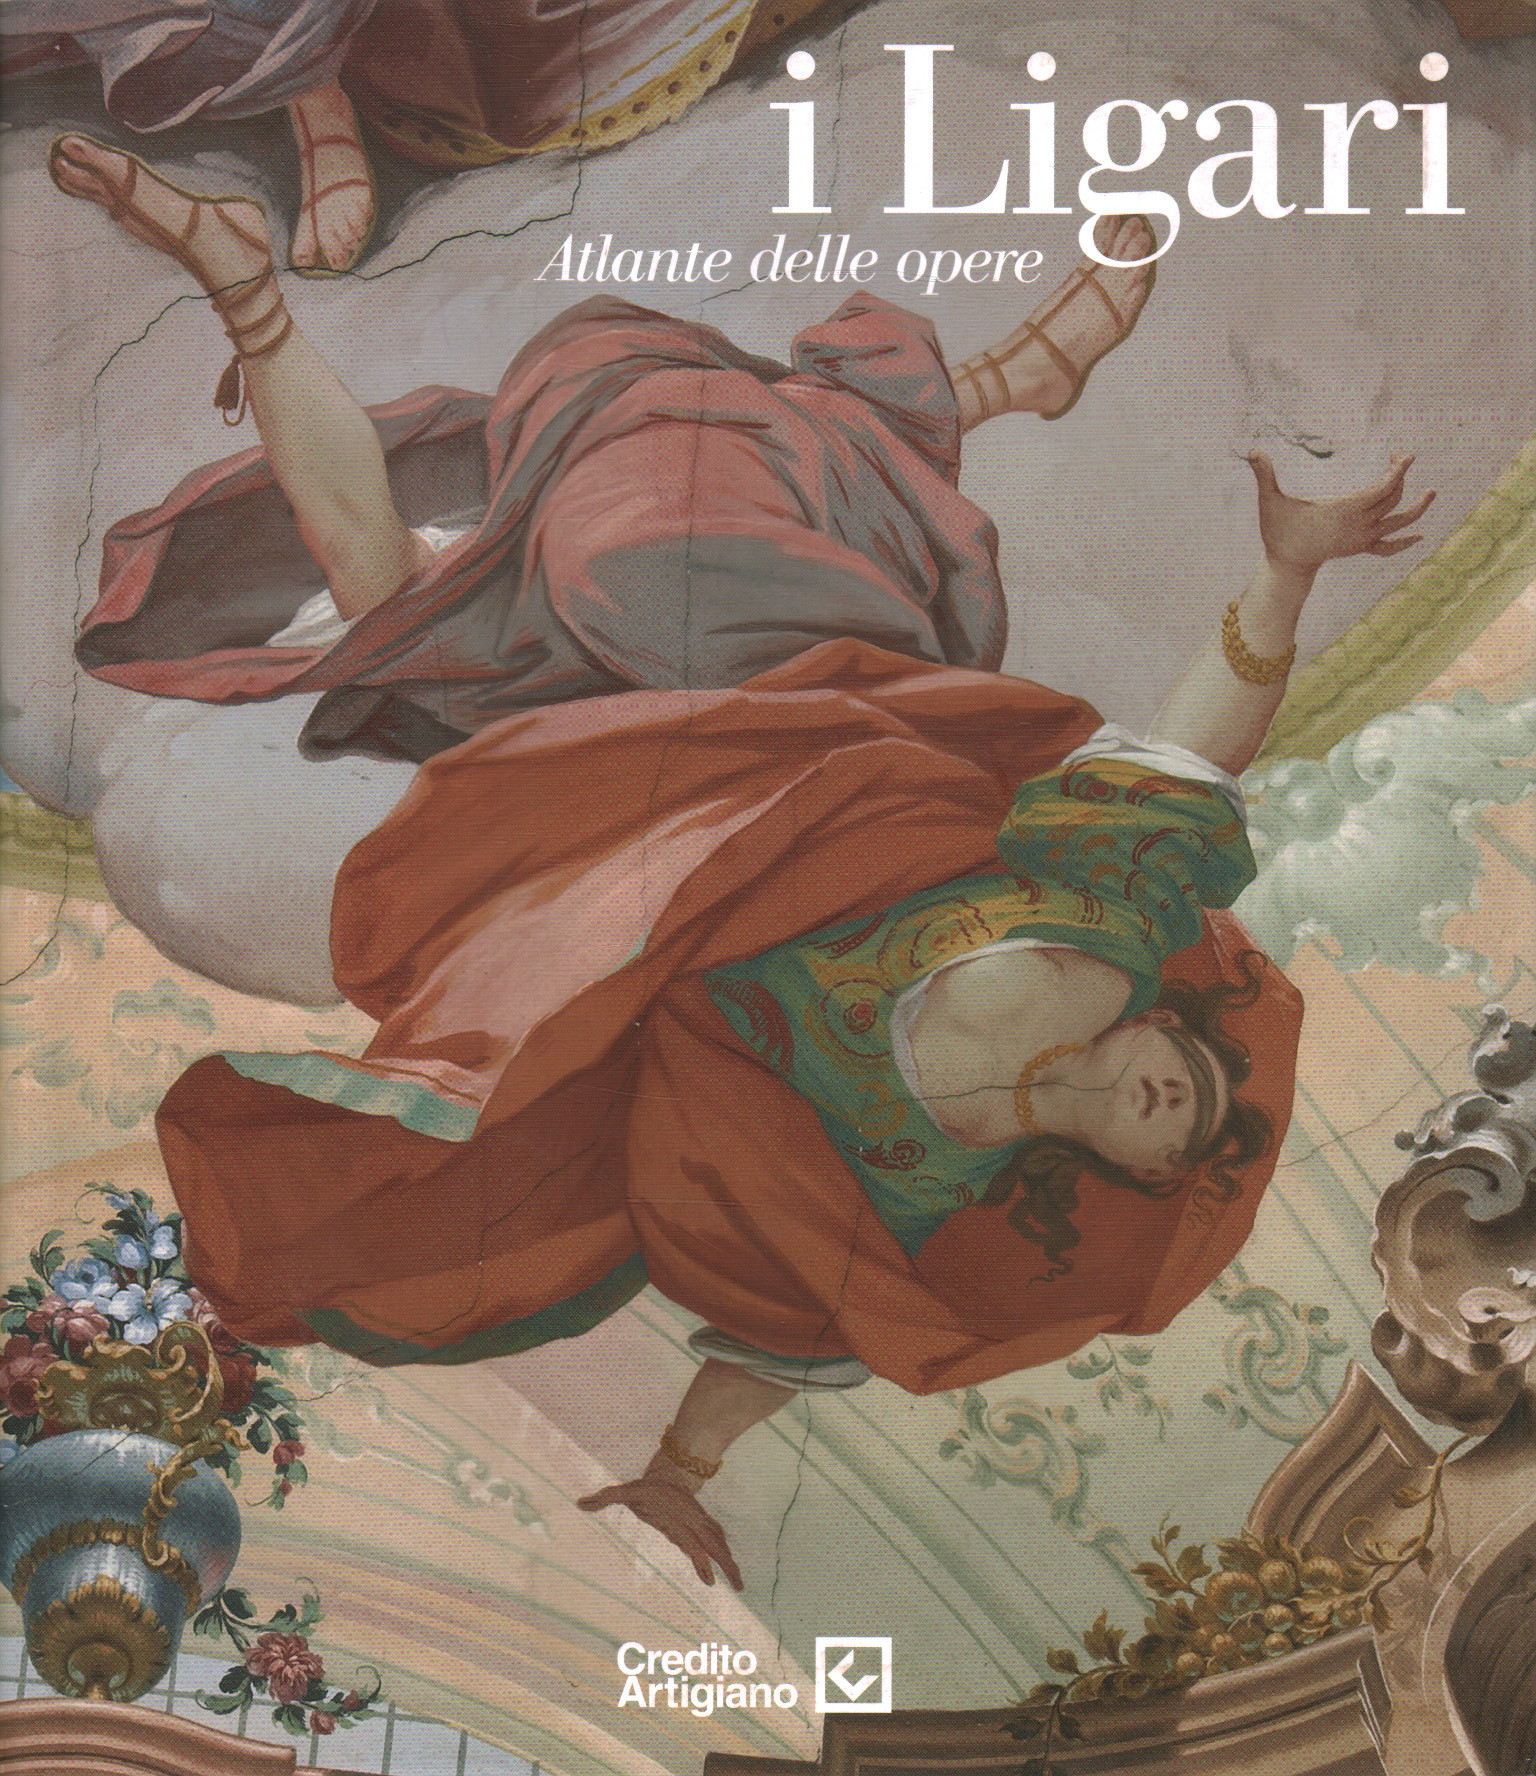 El Ligari. Atlas de obras, Paolo Vanoli